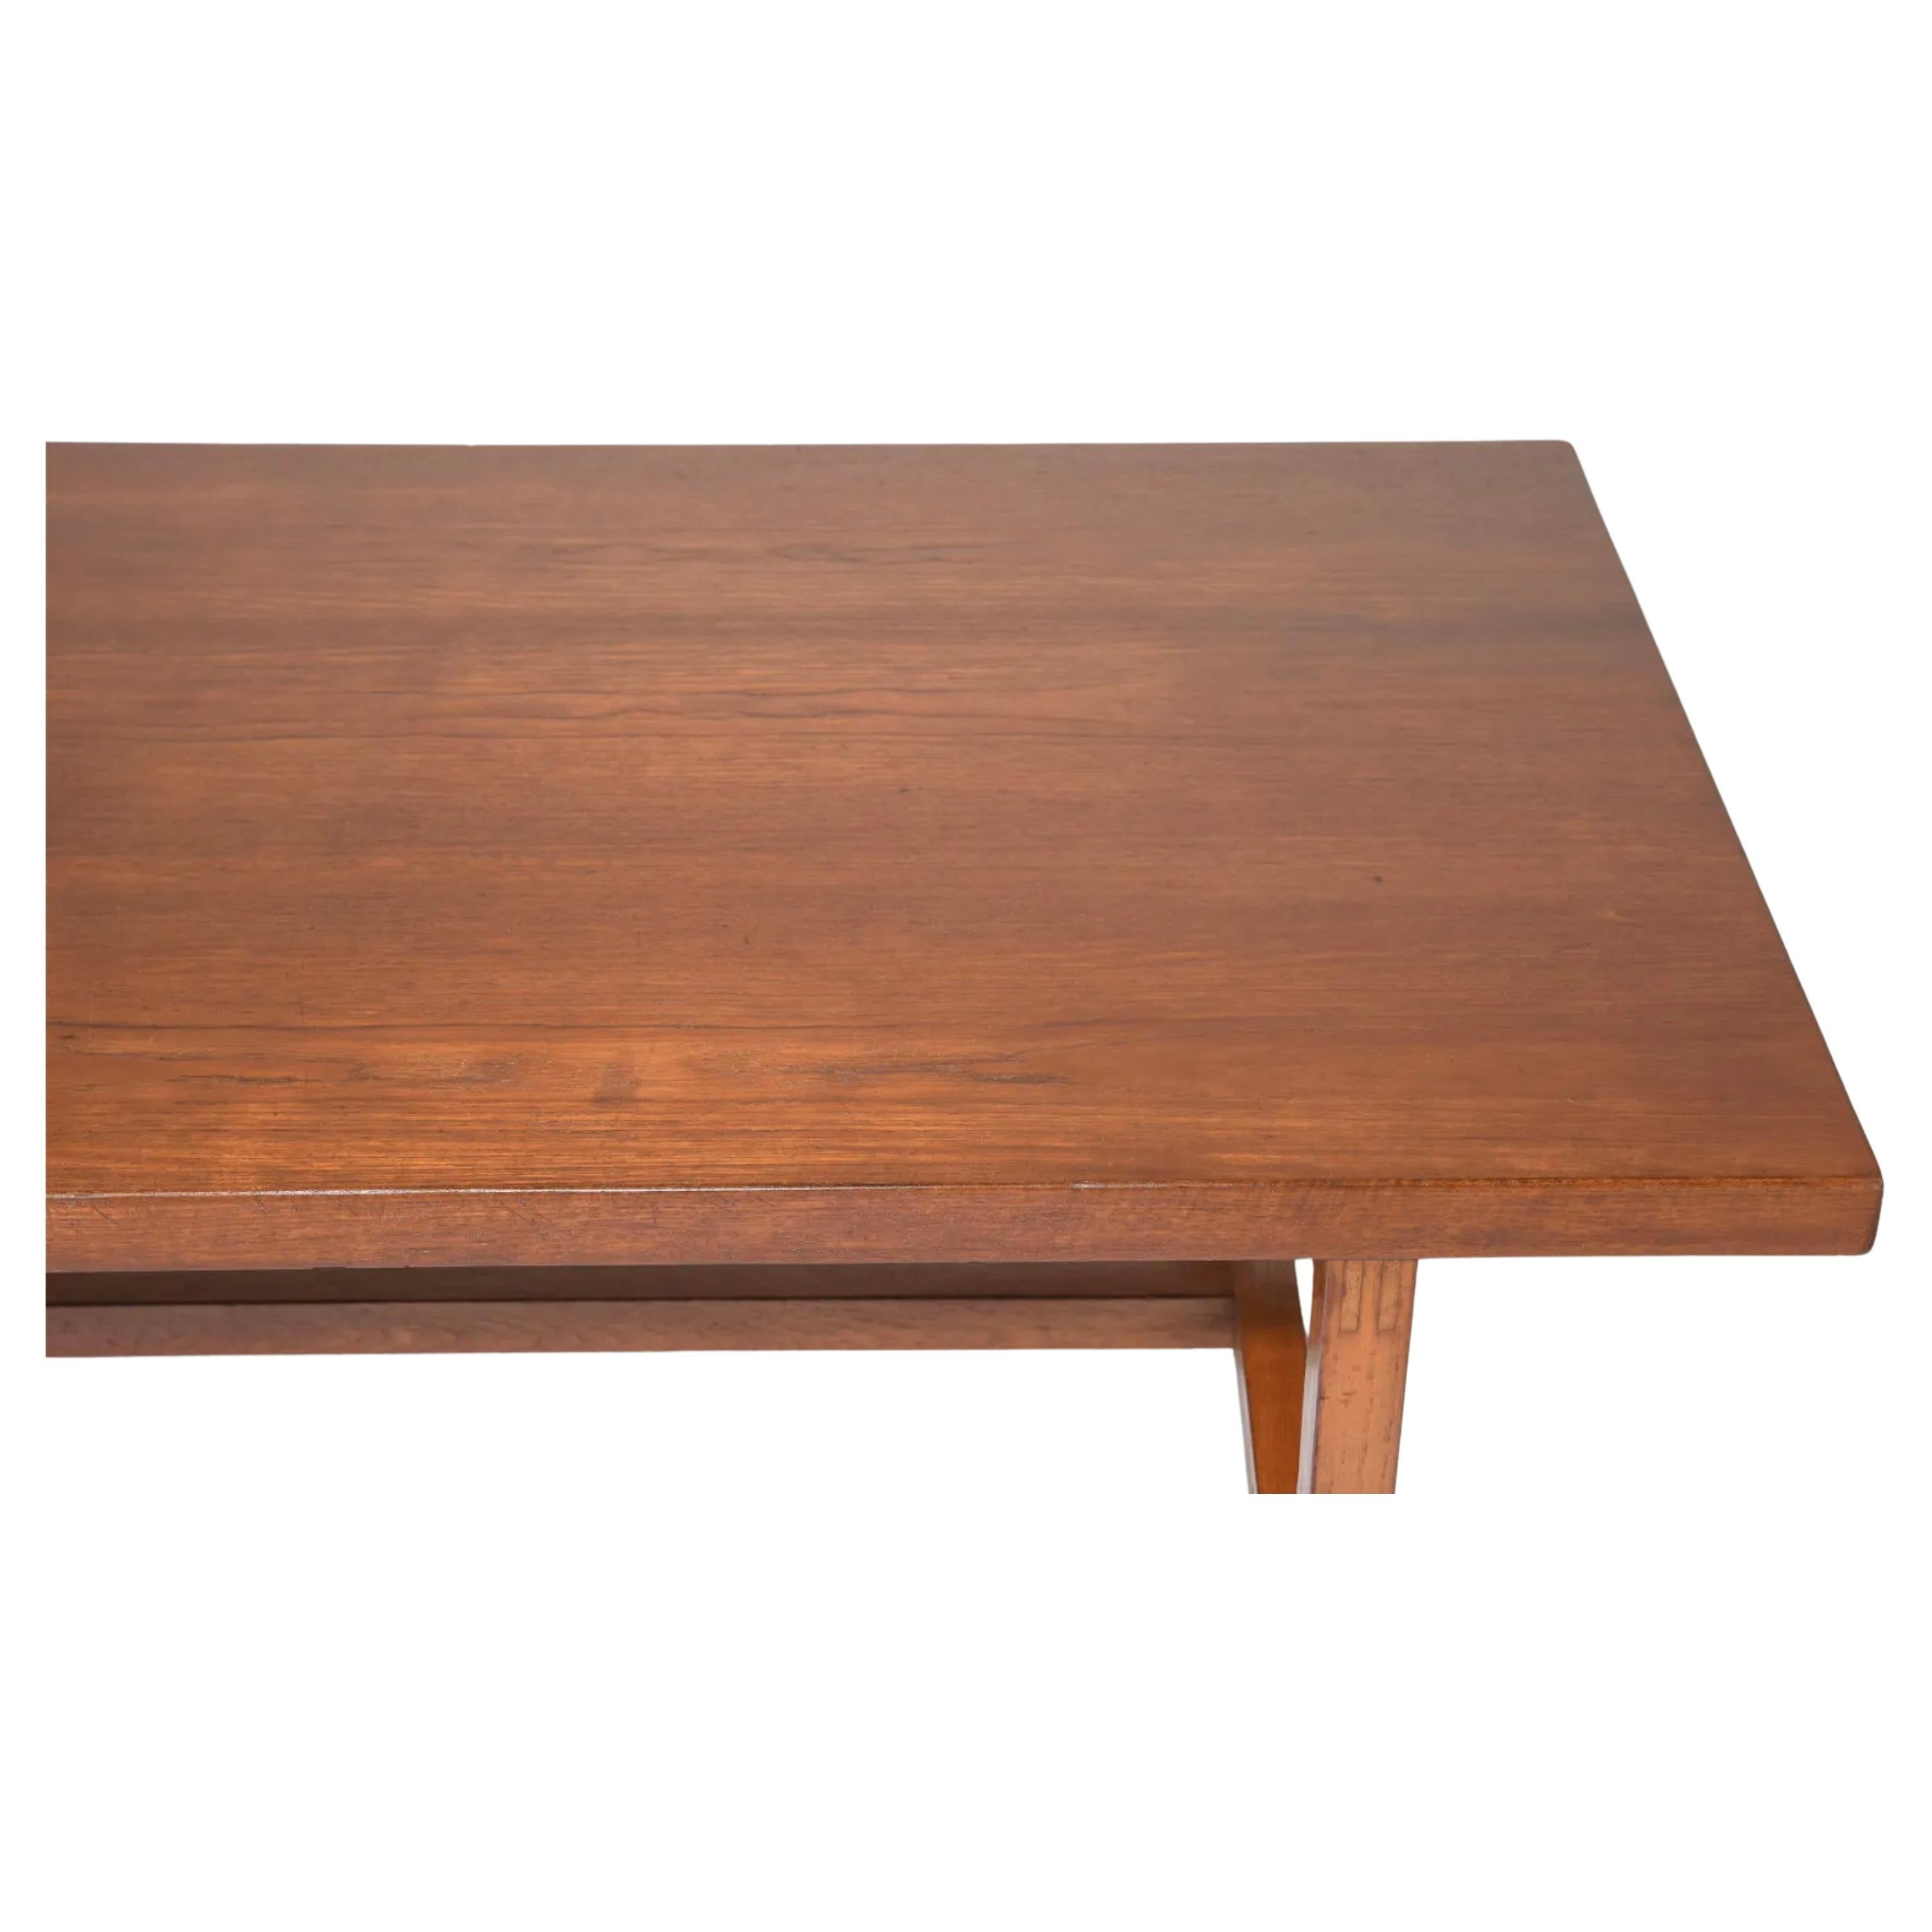 Table de salle à manger rectangulaire en teck, fabriquée au Danemark. Montre une utilisation et une usure normales - table prête à l'emploi. Beaux joints en bois. Pas de feuilles ou d'extensions, juste une table solide. Peut accueillir de 4 à 6